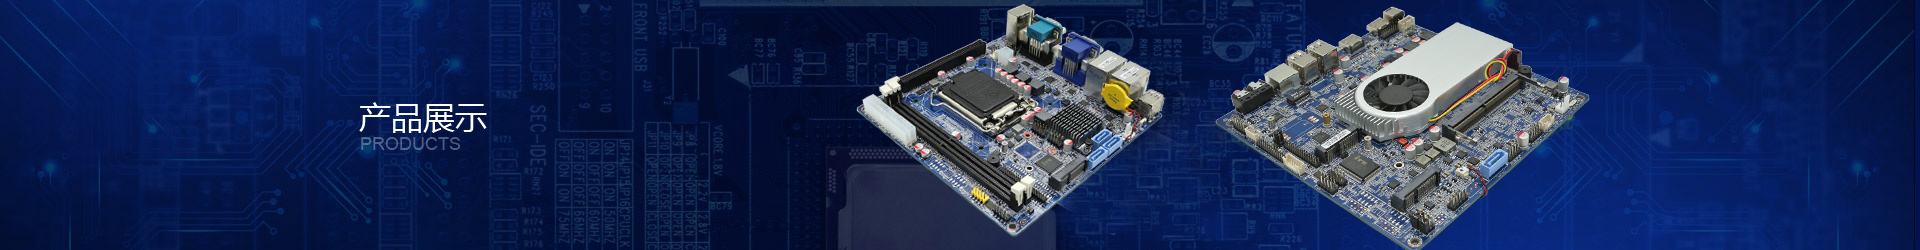 NANO-ITX嵌入式工控板